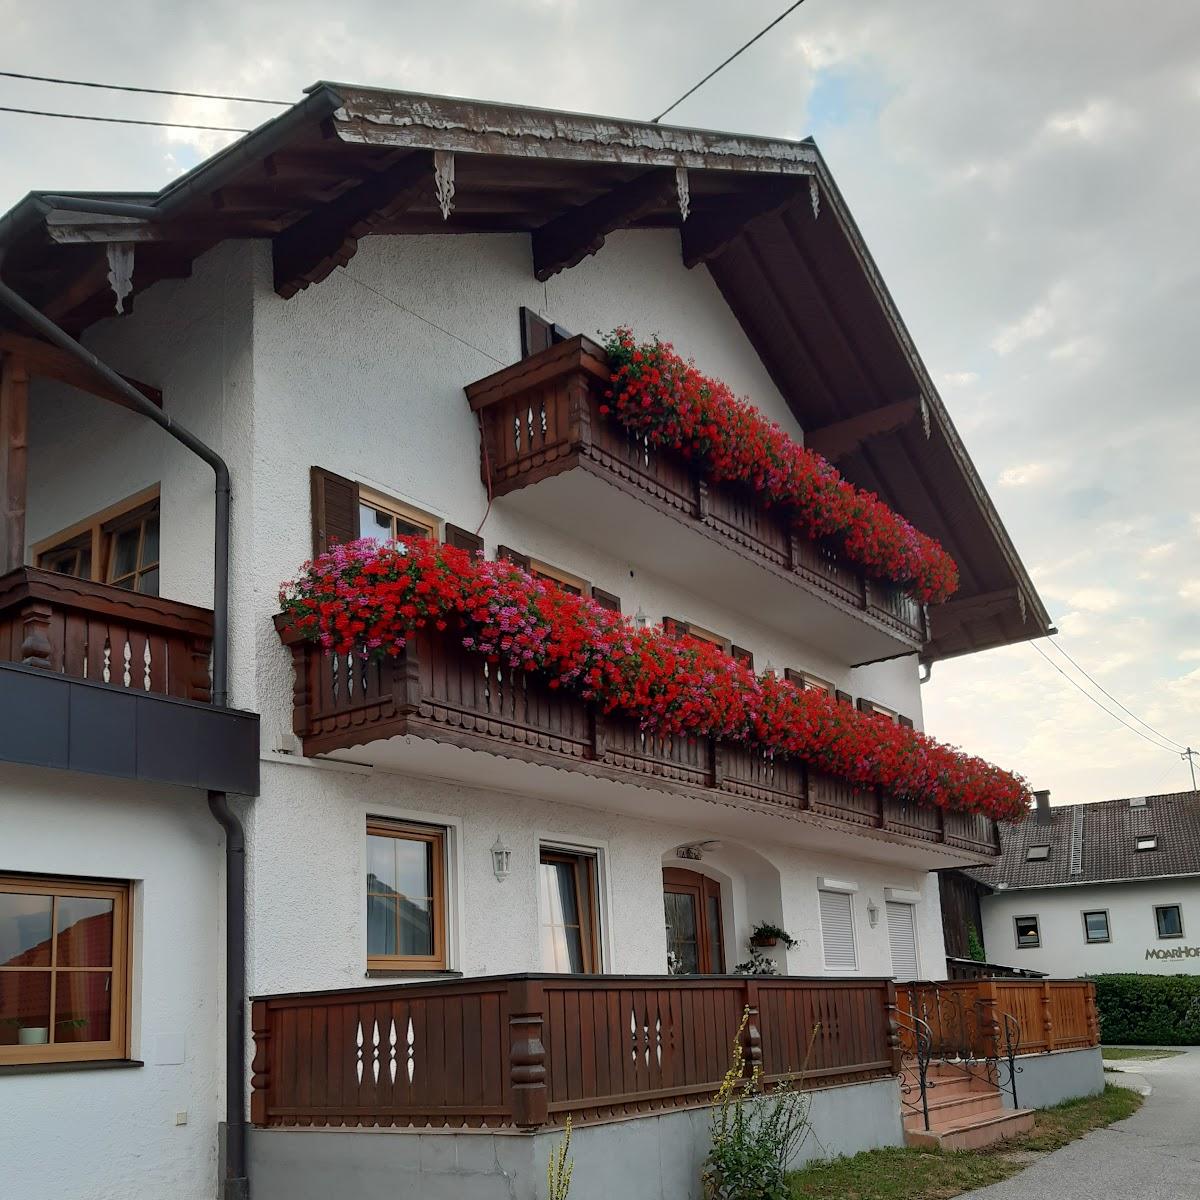 Restaurant "Hotel Schaider" in Ainring